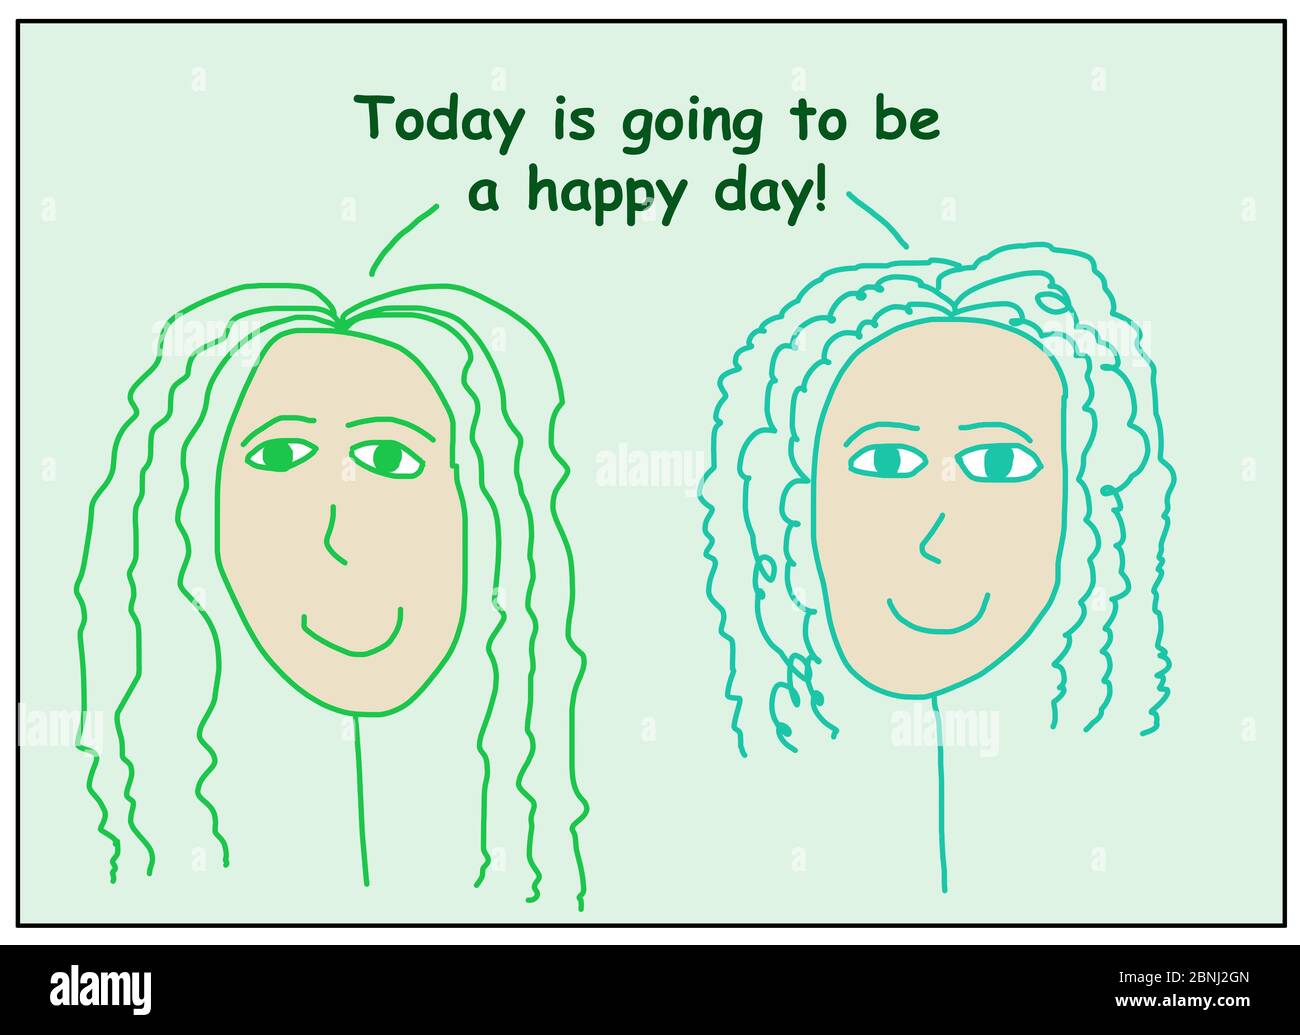 Farbe Cartoon von zwei lächelnden Frauen sagen, dass heute wird ein glücklicher Tag sein. Stockfoto